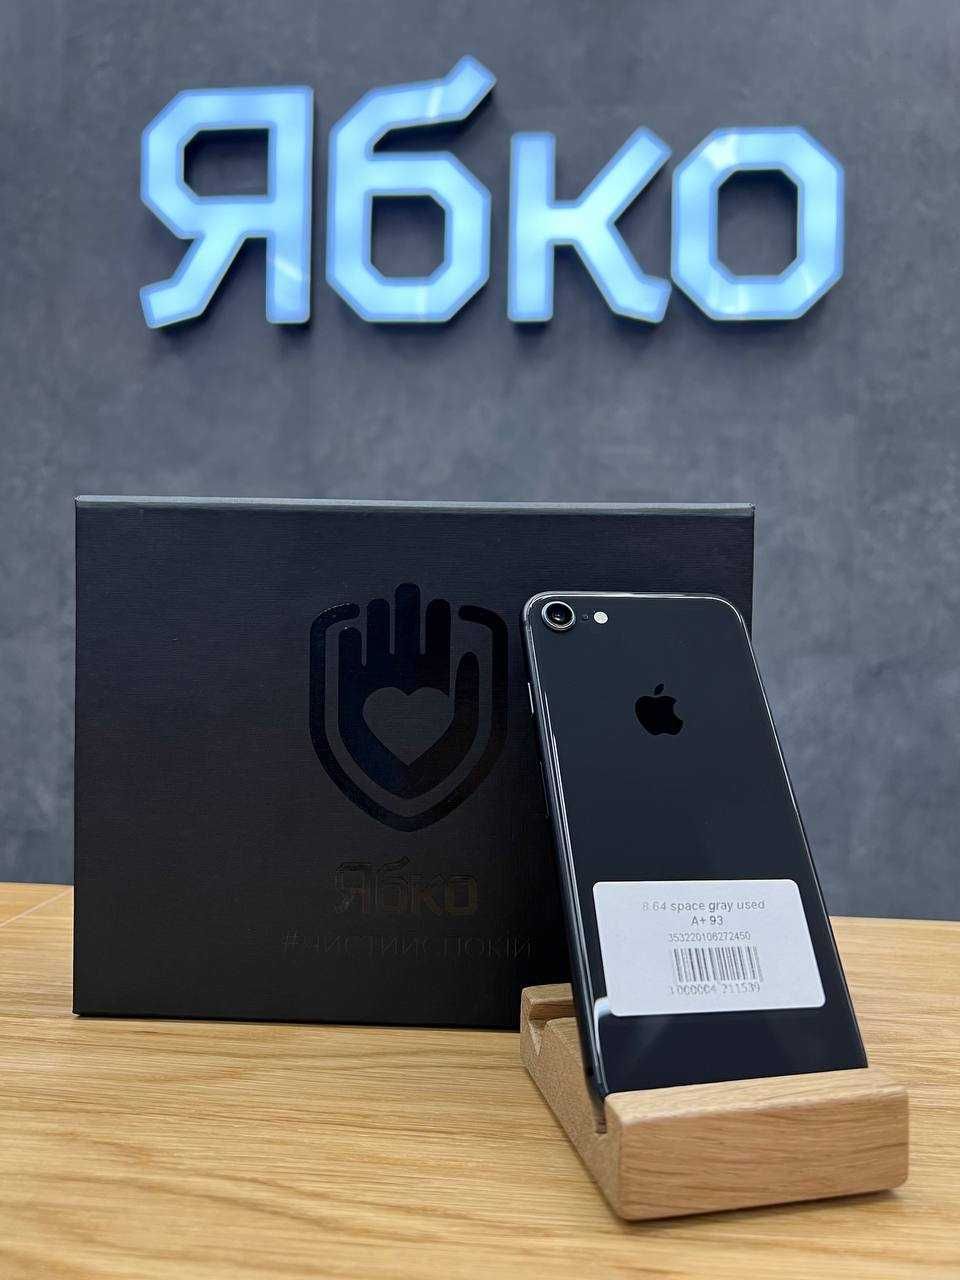 Apple iPhone 8 64gb used Ябко Кам'янське Свободи 51/2